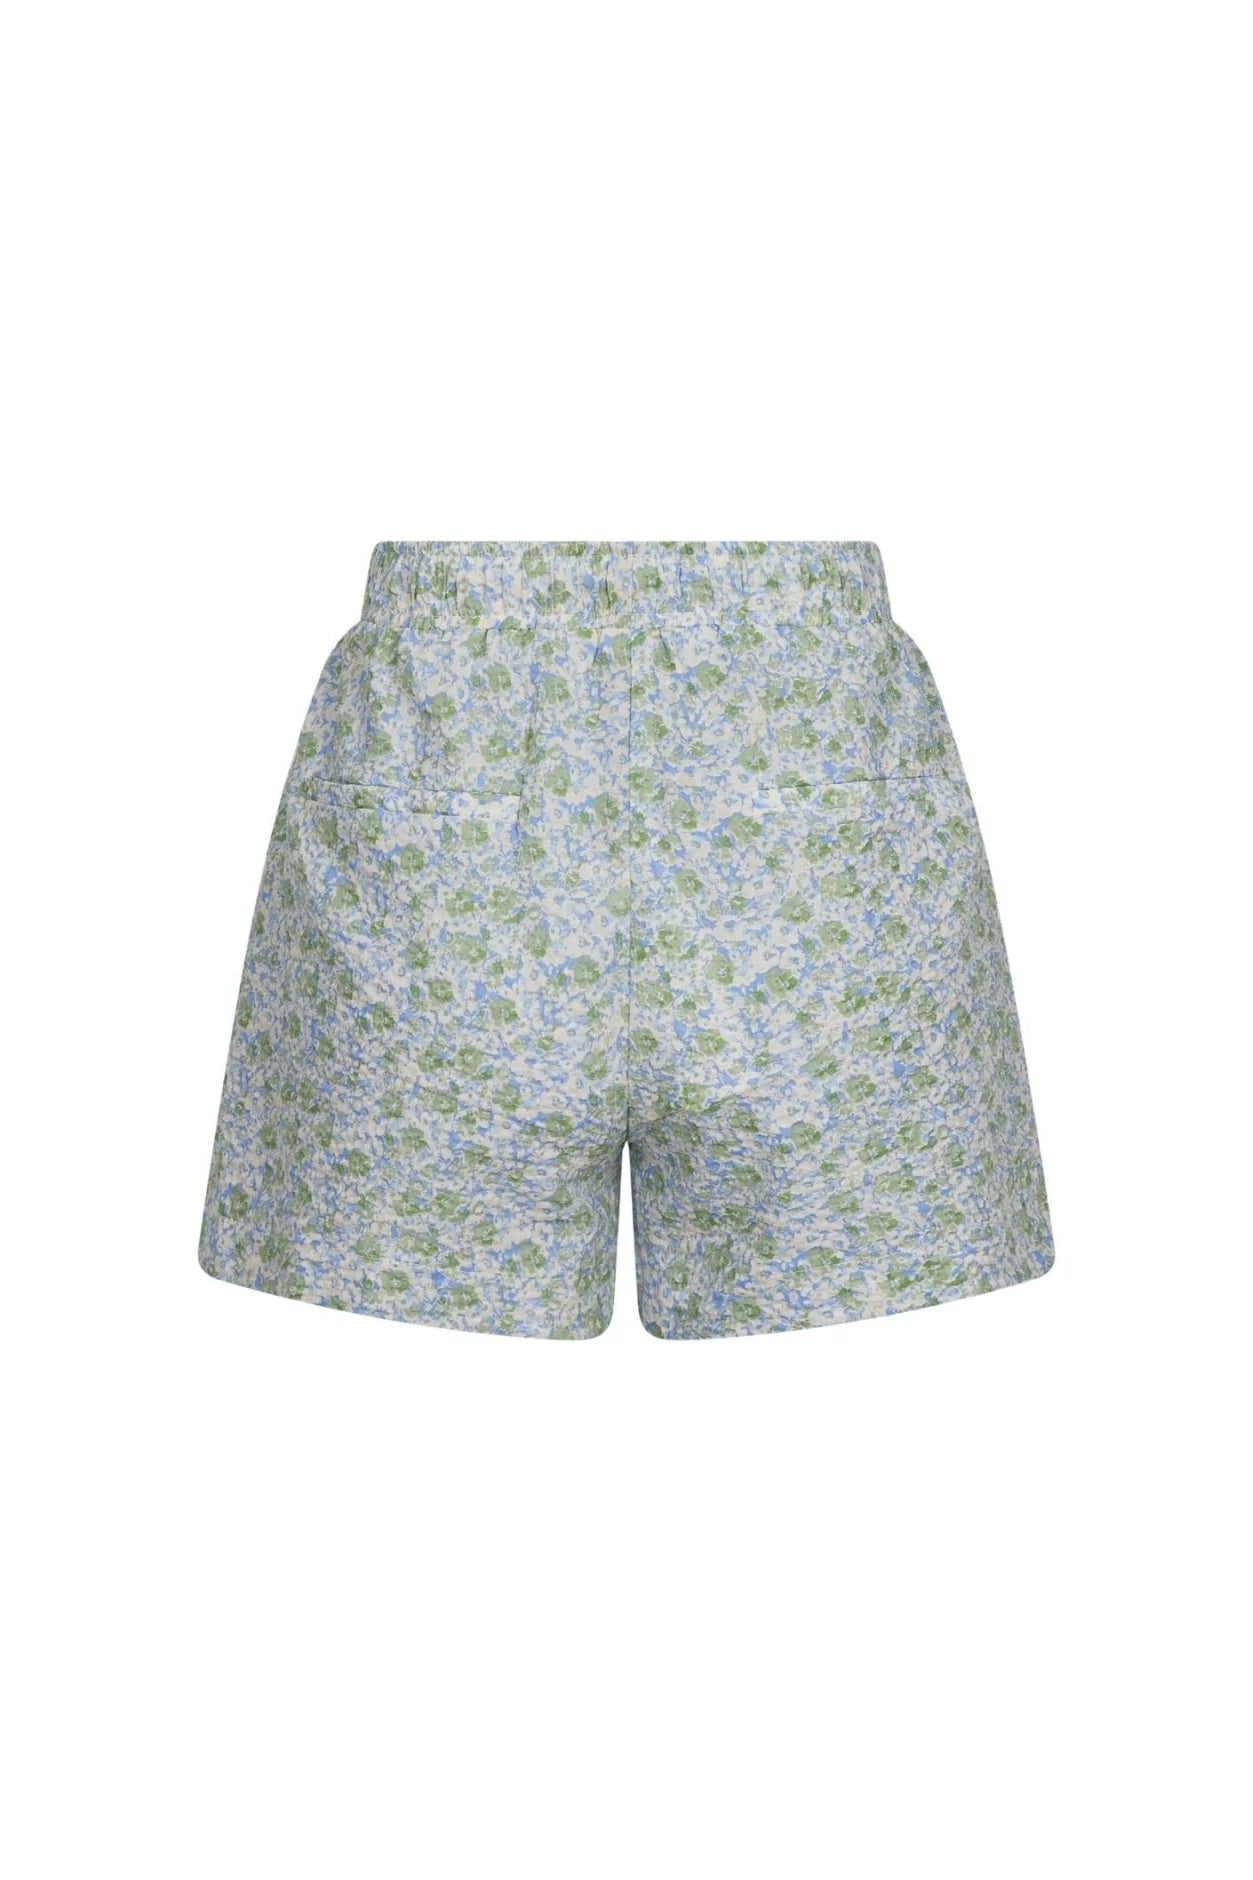 Abbigail Ocean Breeze Shorts